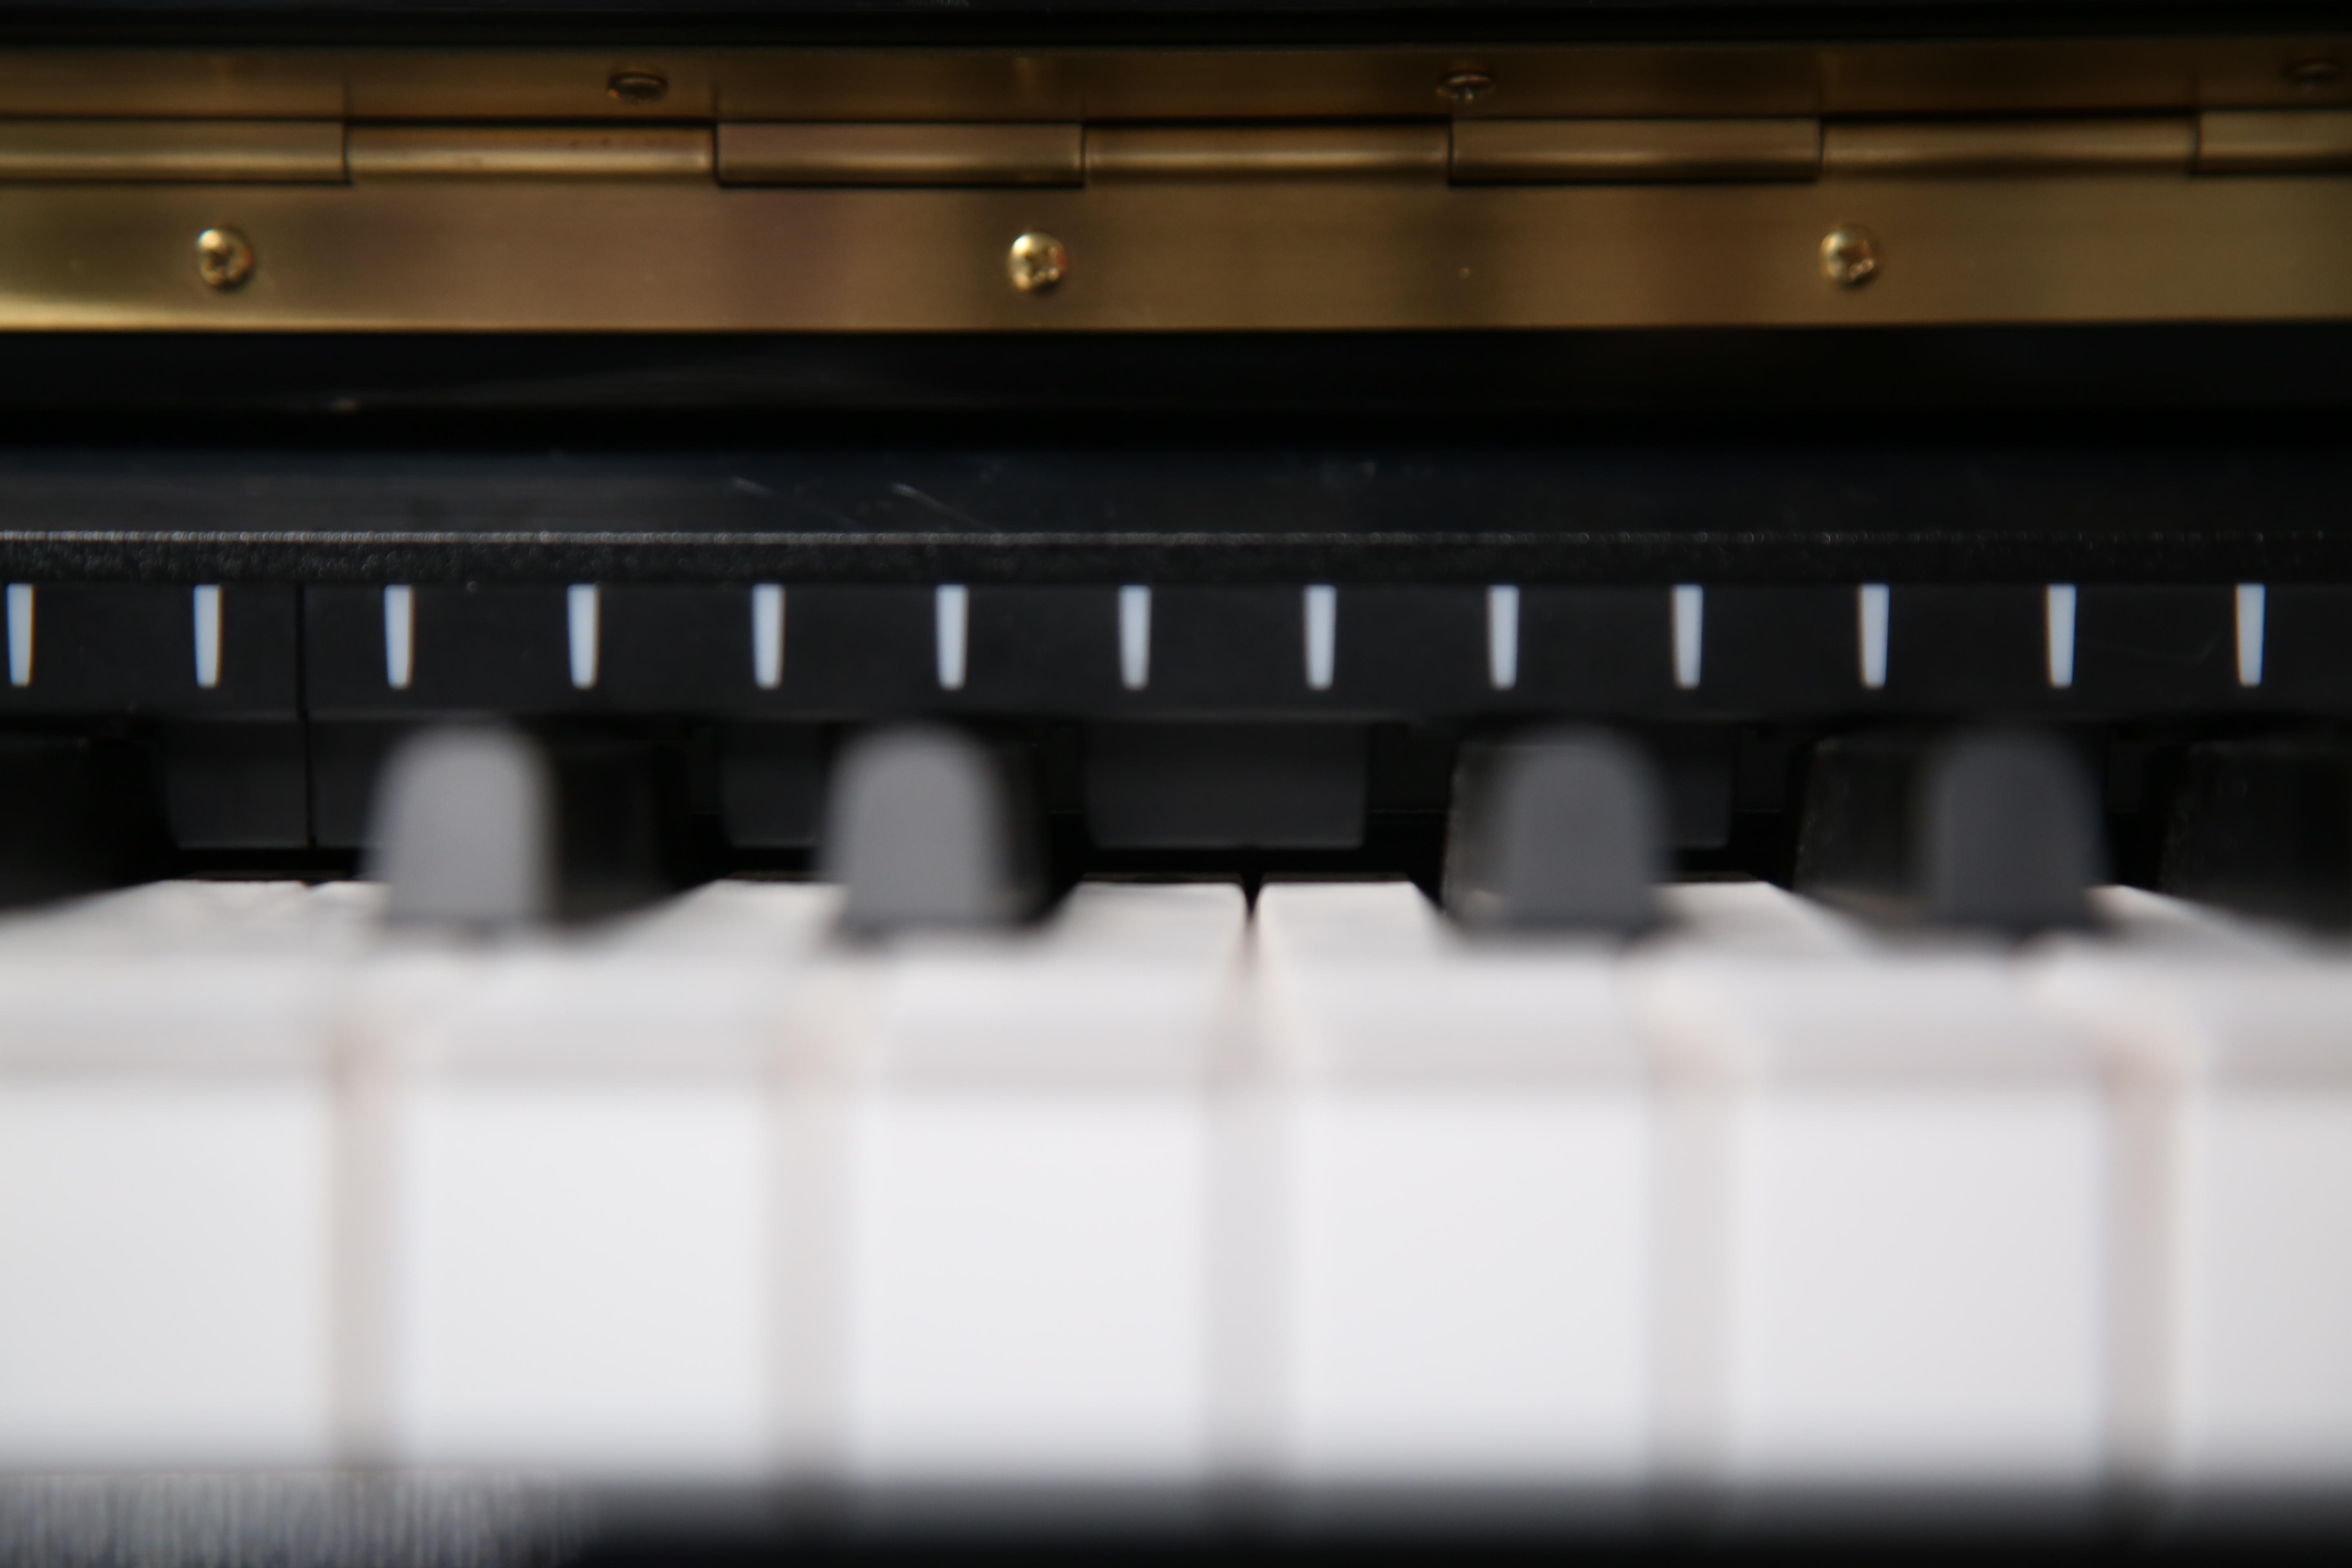 Thanh kết nối piano The ONE hi-lite thế hệ 2.0 biến đàn piano cơ hoặc piano điện 88 phím thành piano thông minh - Phiên bản dành cho iPad/iPhone - Đi kèm dây kết nối cổng lightning- Hàng chính hãng